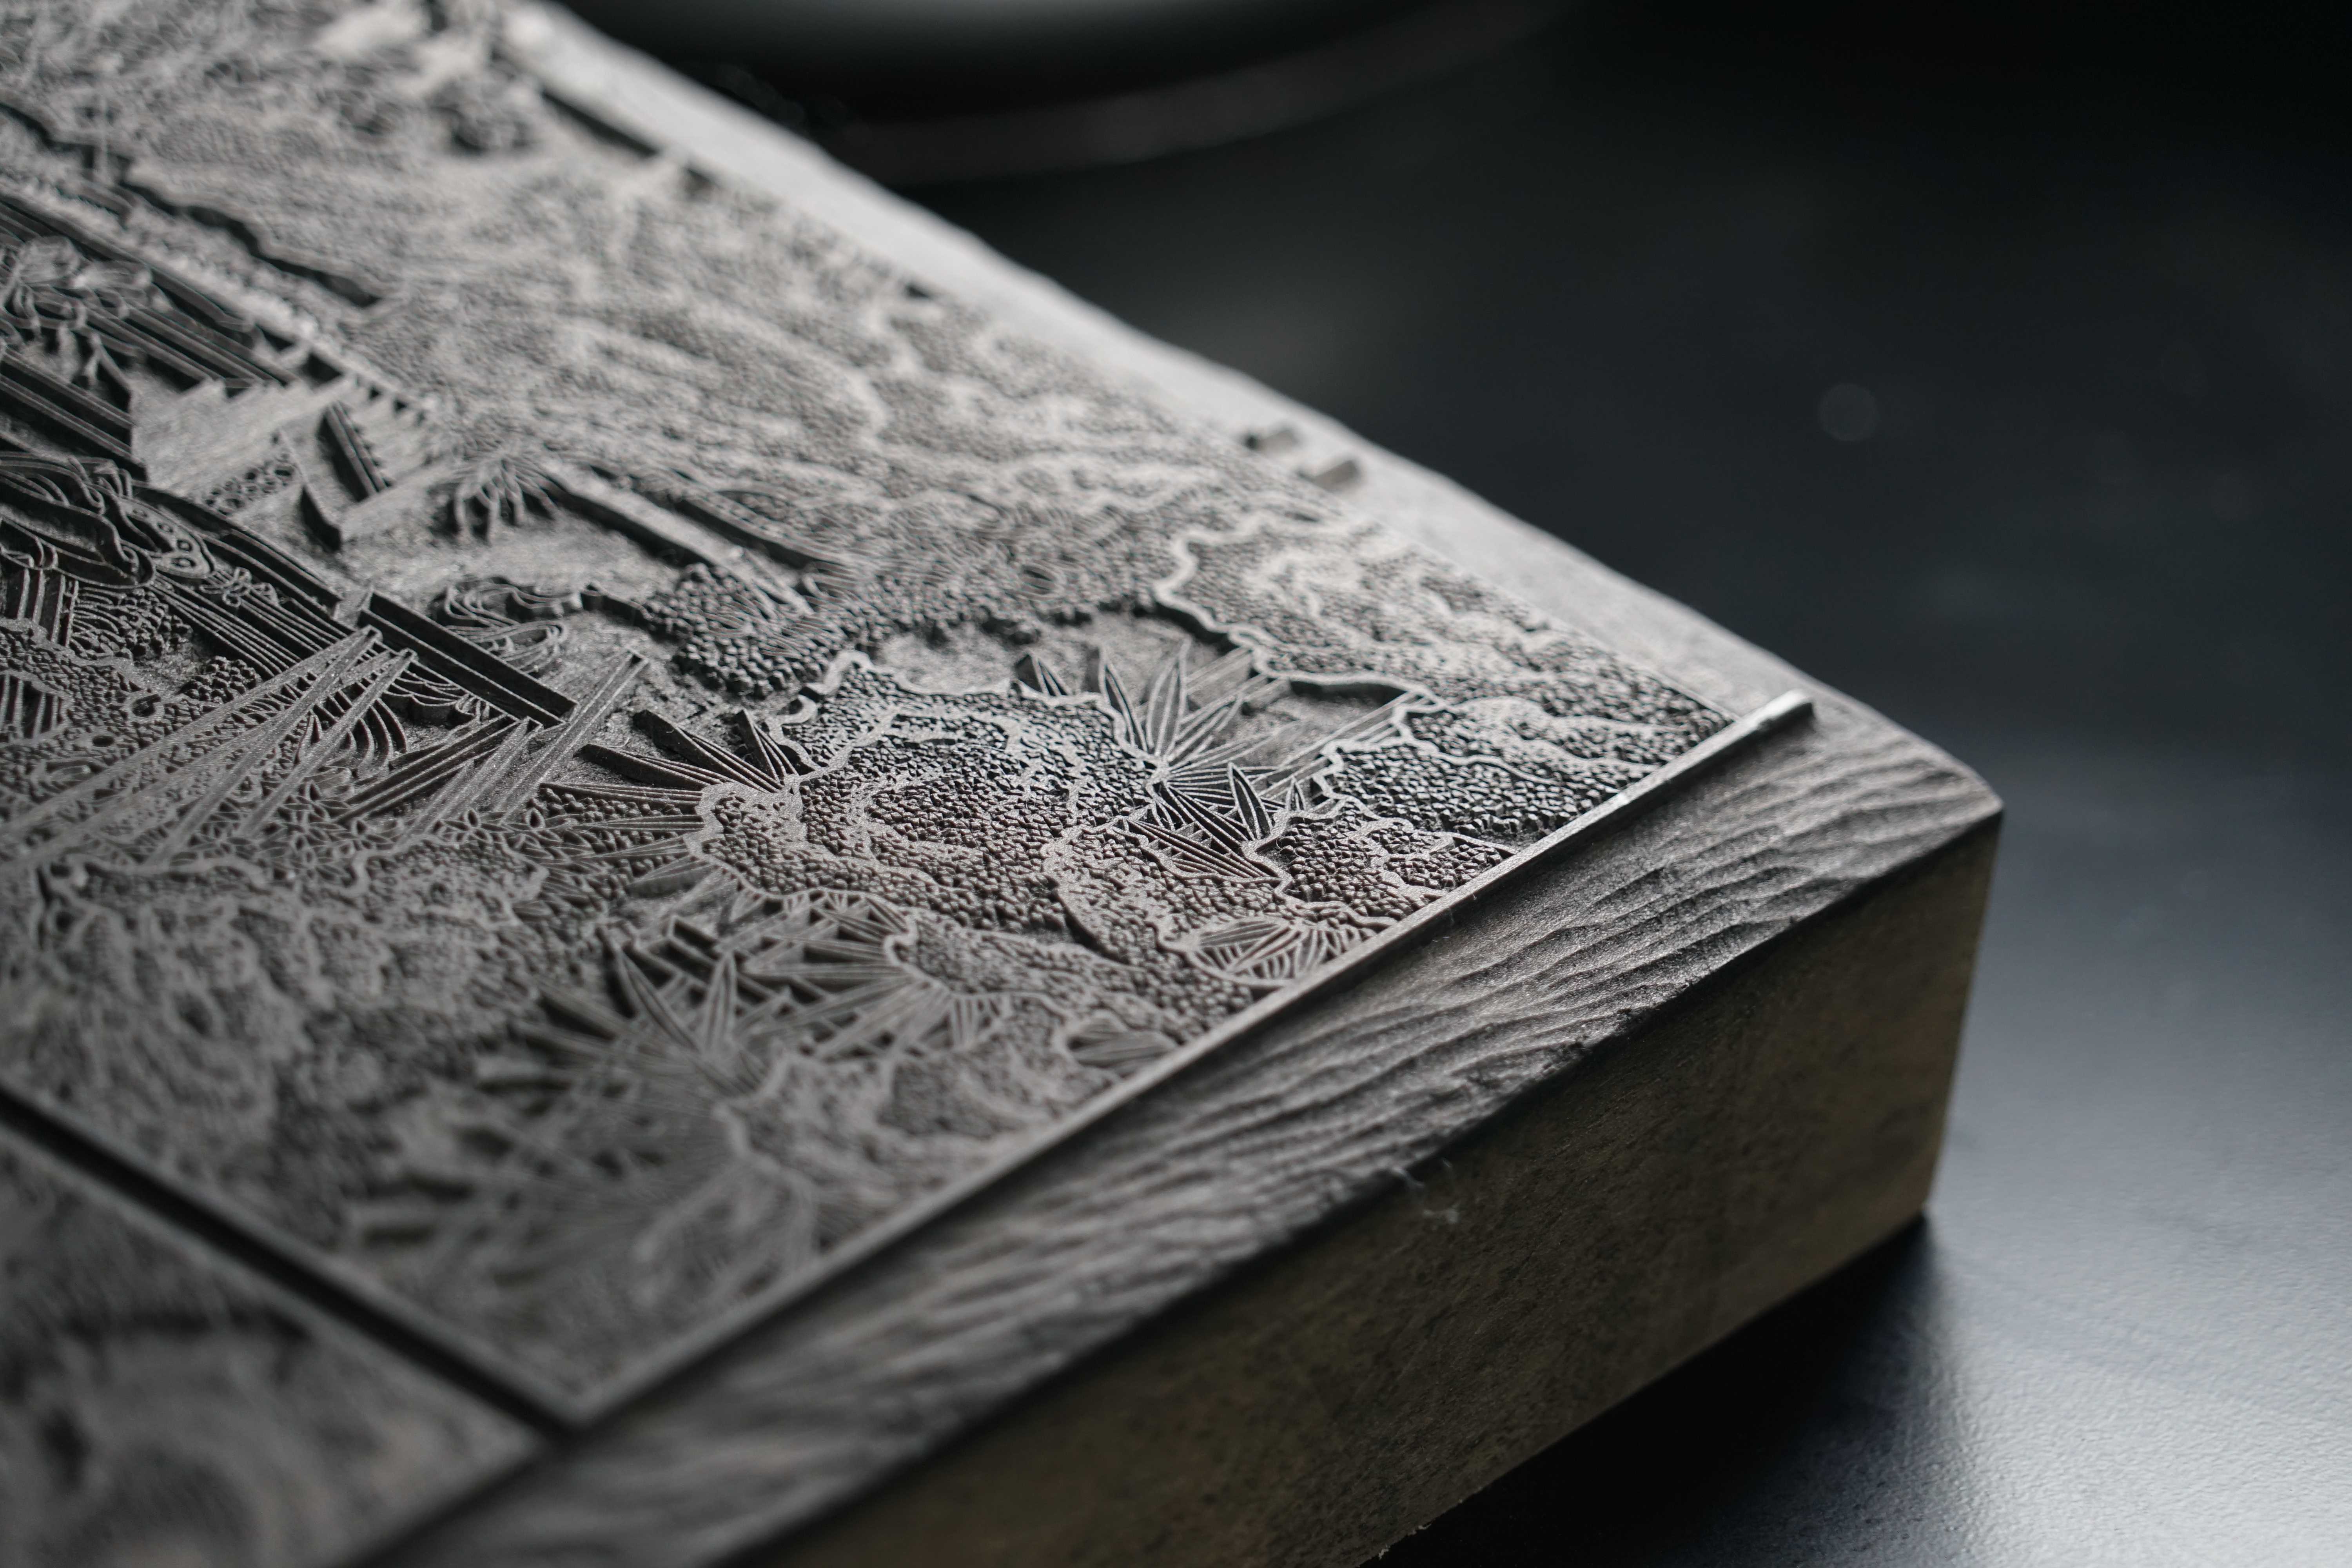 且为世界上最早发明的印刷技术,从隋唐开始的近千年时间里,雕版印刷